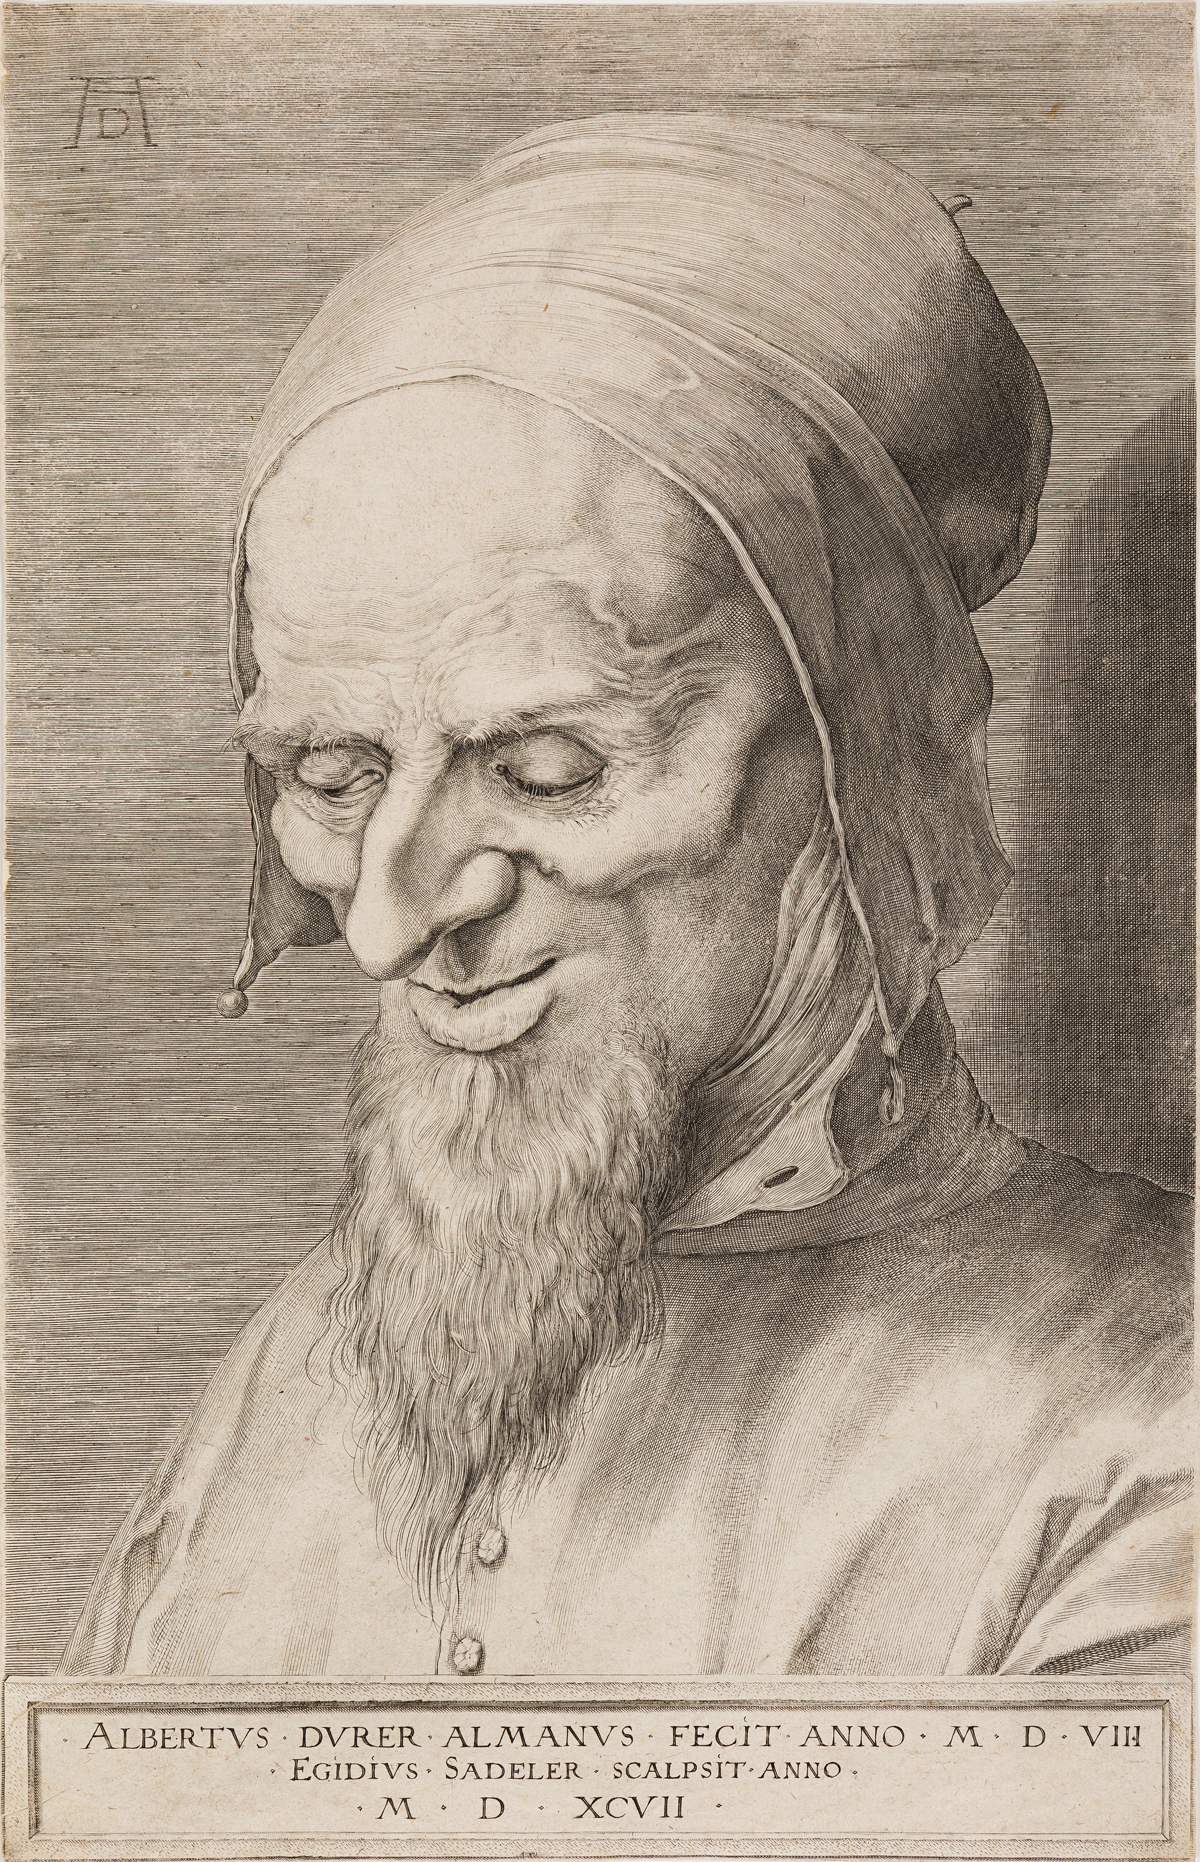 AEGIDIUS SADELER (after Dürer) Head of an Apostle with Beard and Cap